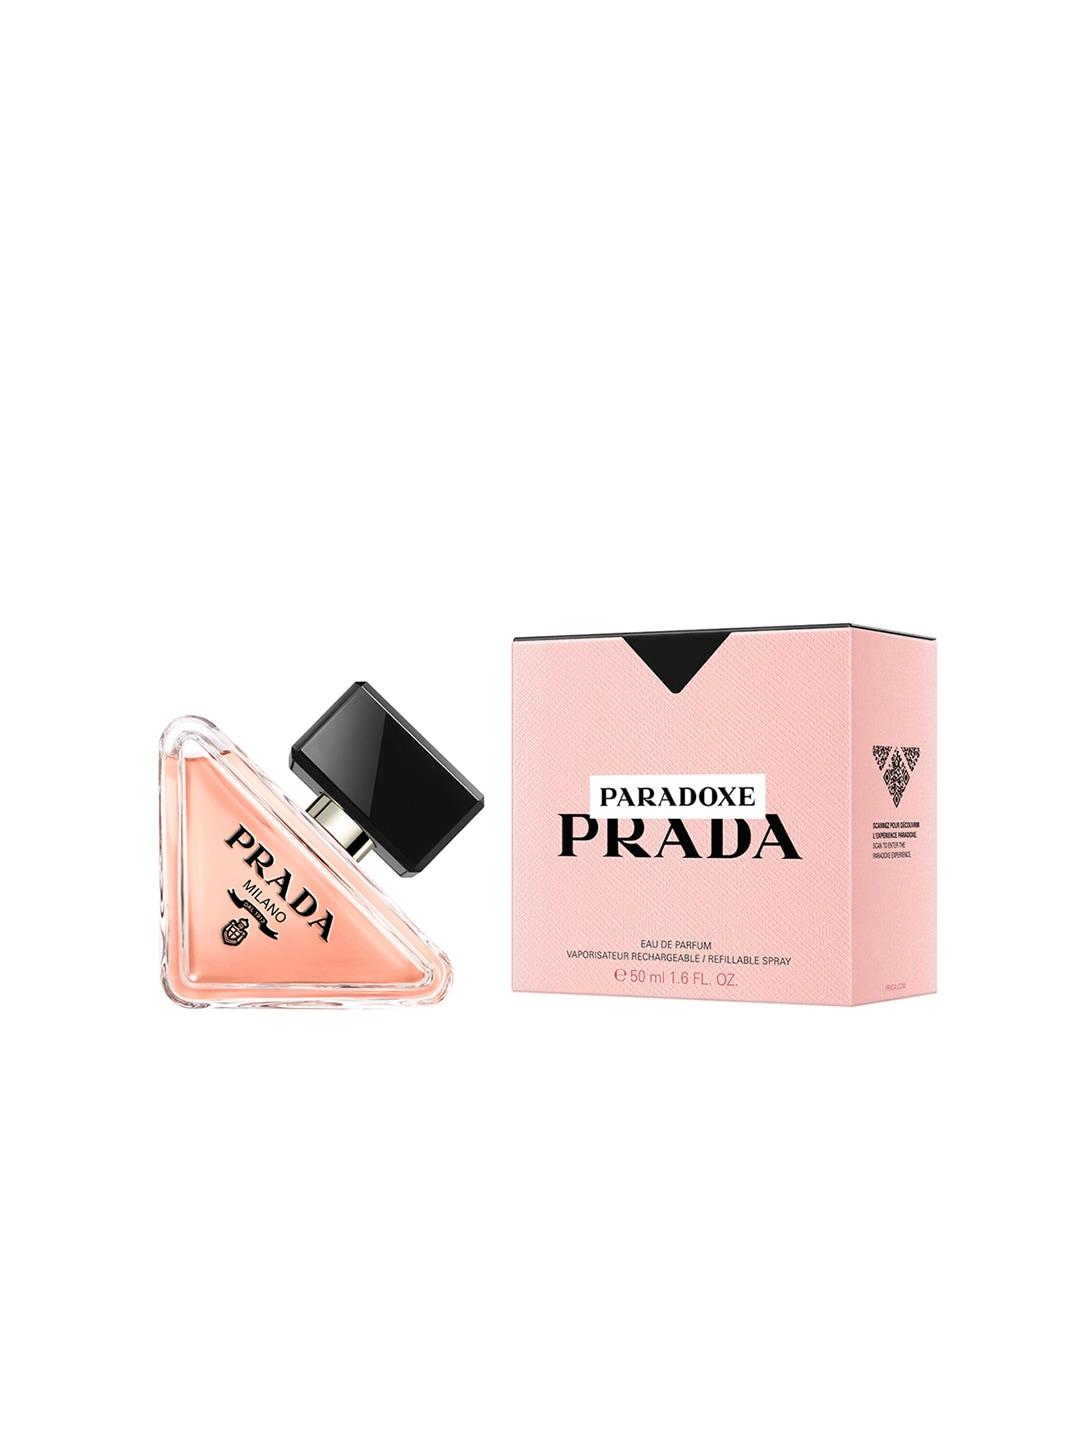 Prada Women Paradoxe Eau de Parfum Refillable Spray - 50ml